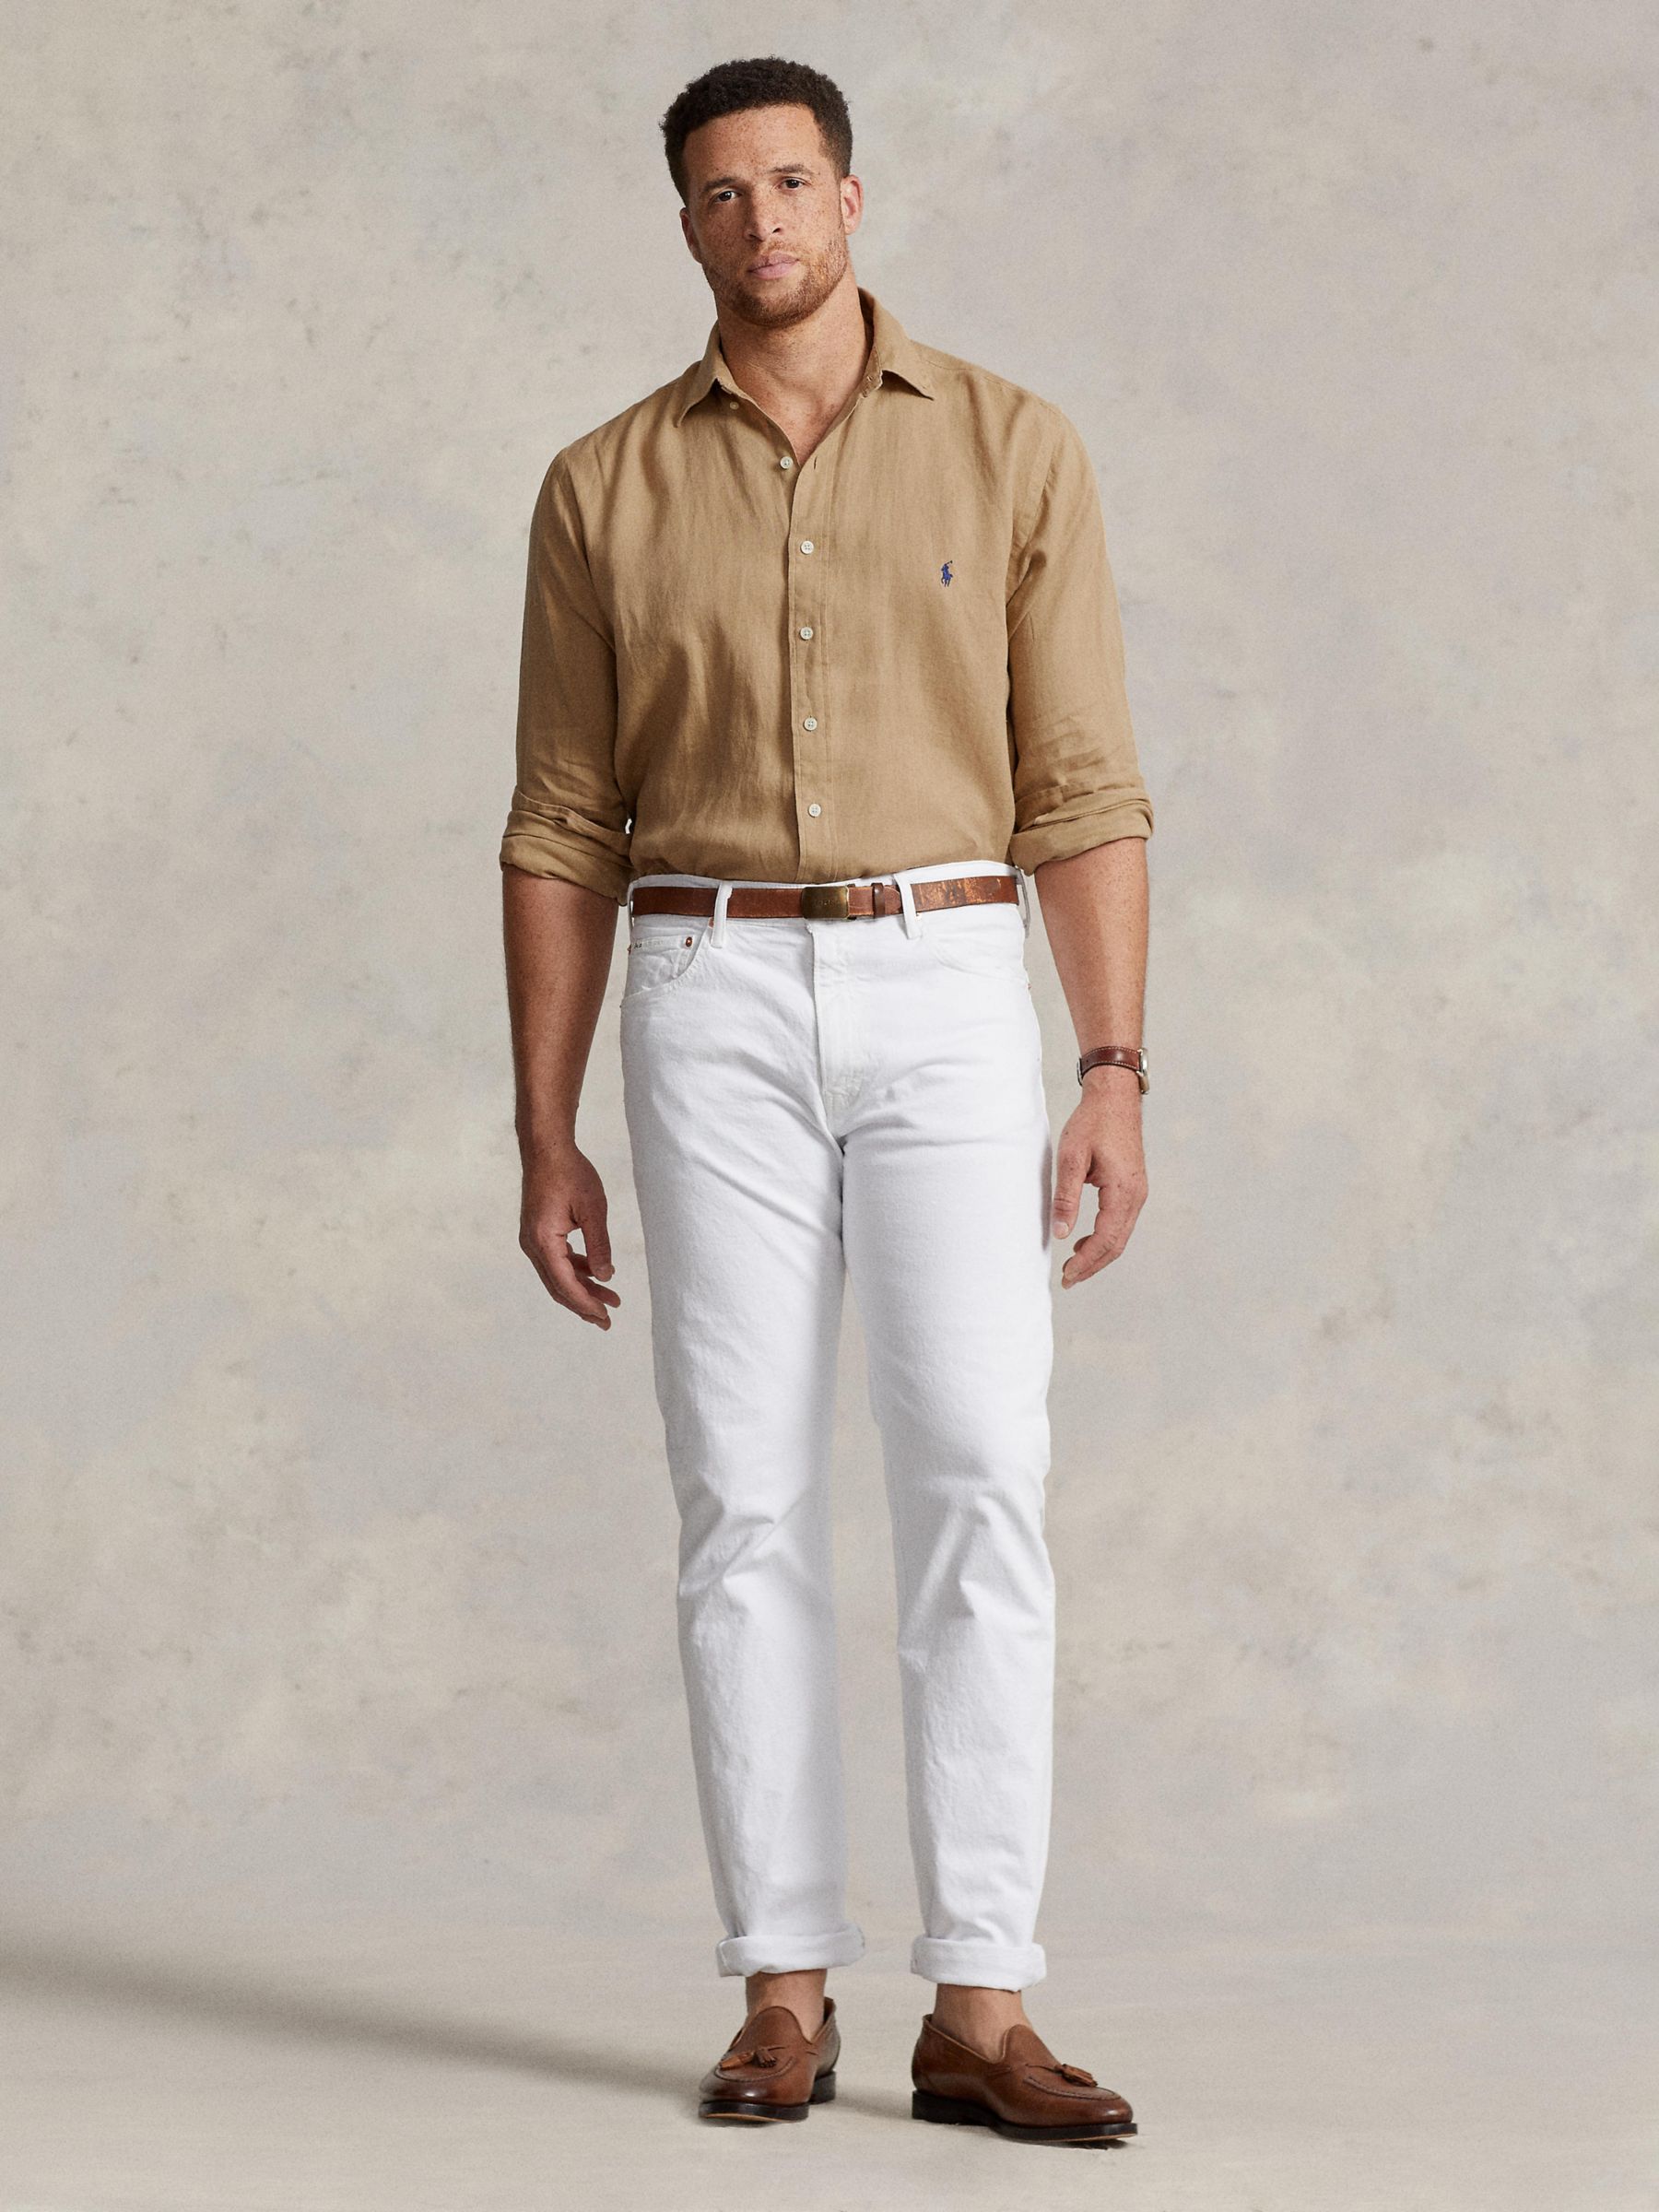 Ralph Lauren Big & Tall Long Sleeve Linen Shirt, Vintage Khaki, XLT